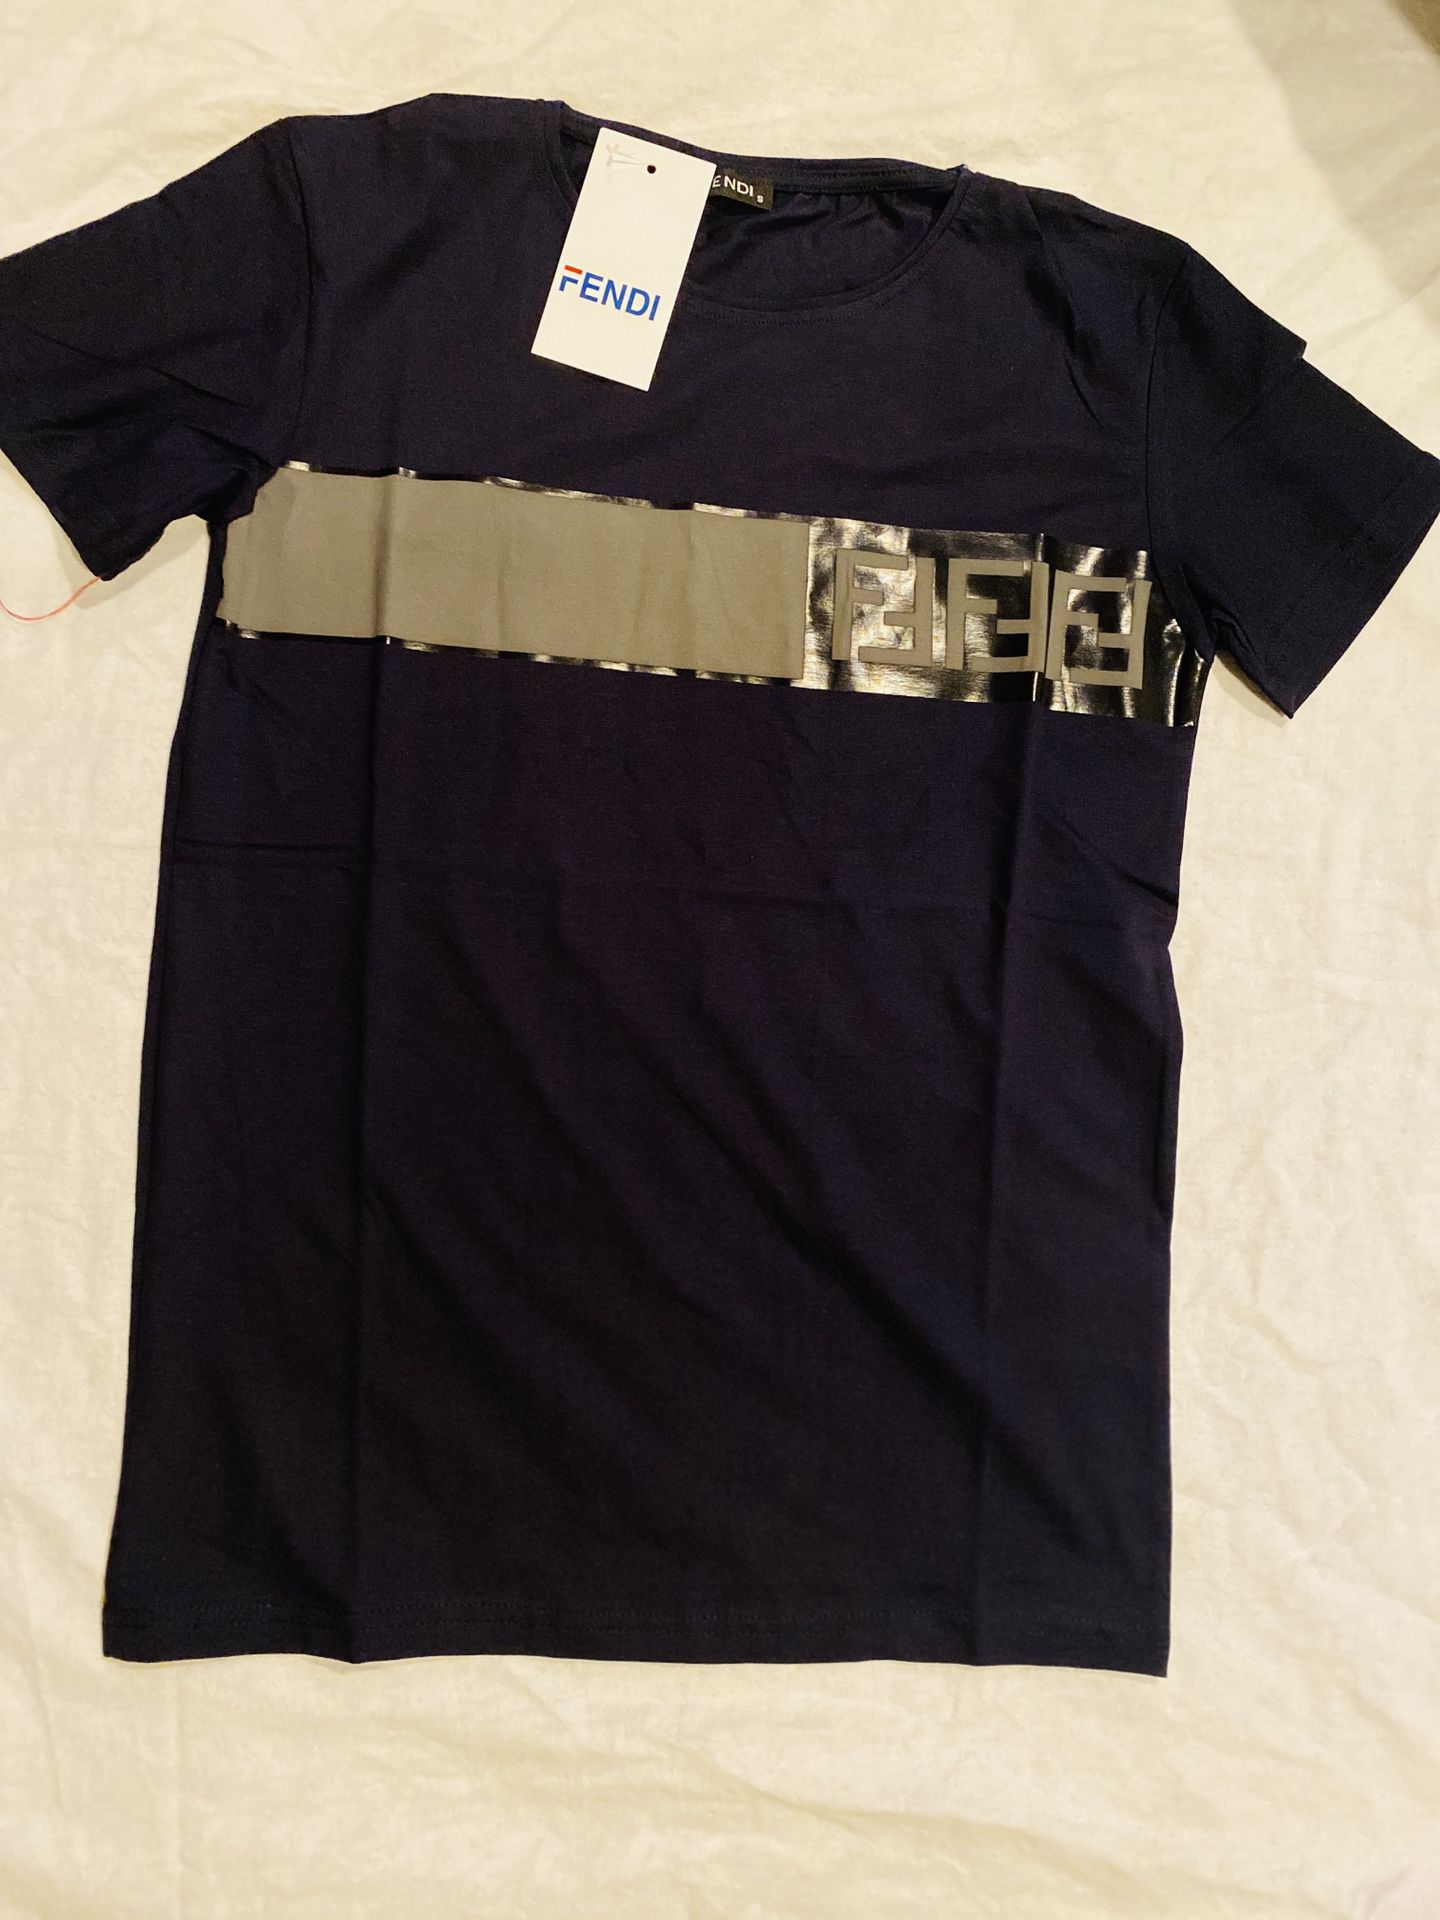 Shirt (FENDI) size small